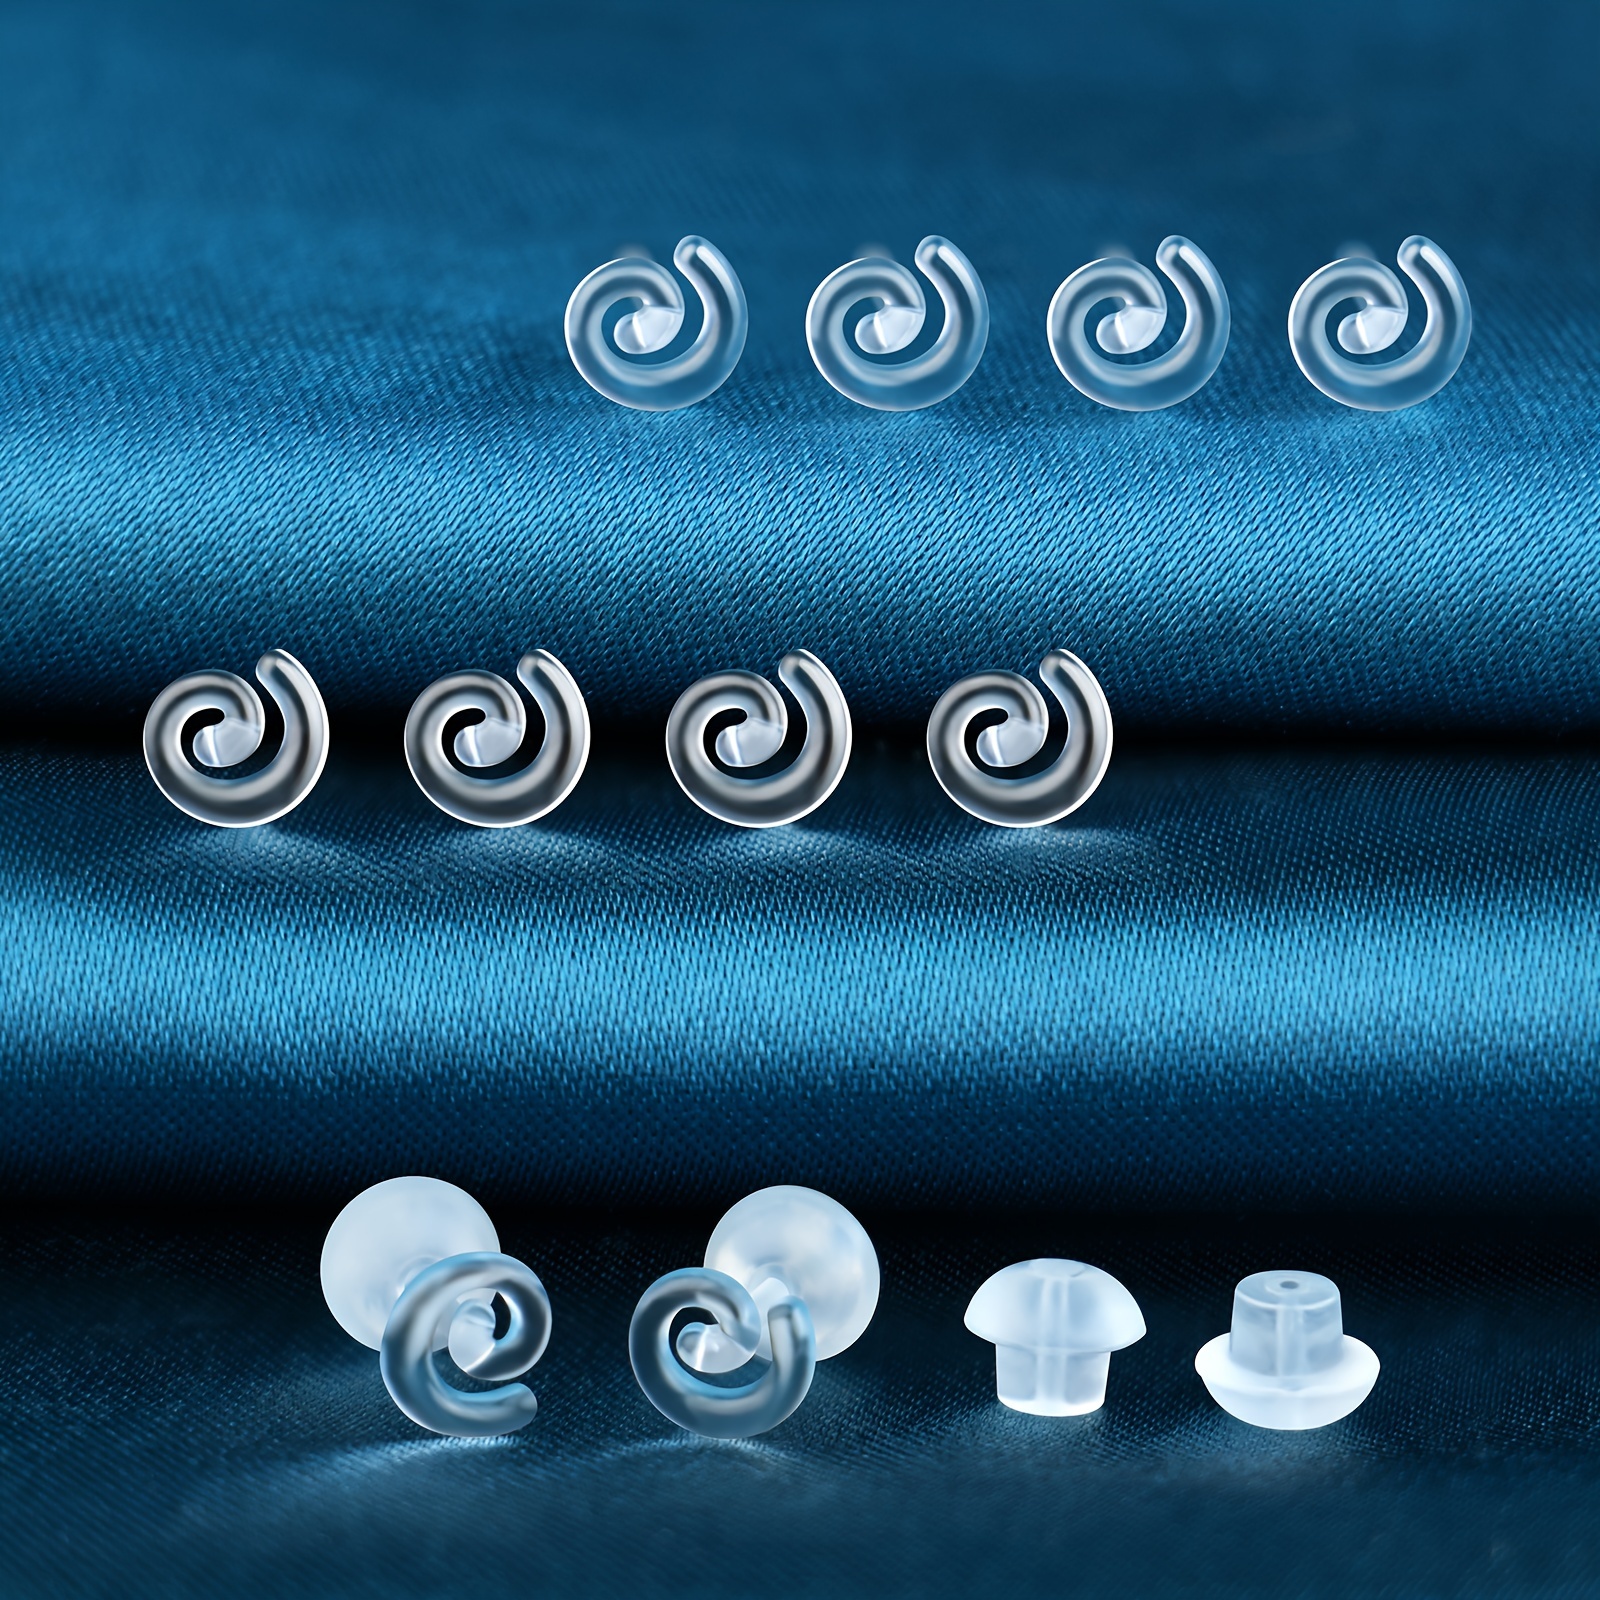 Plastic Earrings, KMEOSCH 2 Pairs Plastic Météorites Studs Earrings for  Sensitive Ears Lucky Hexagram Stars Earrings Studs Hypoallergenic With  Plastic